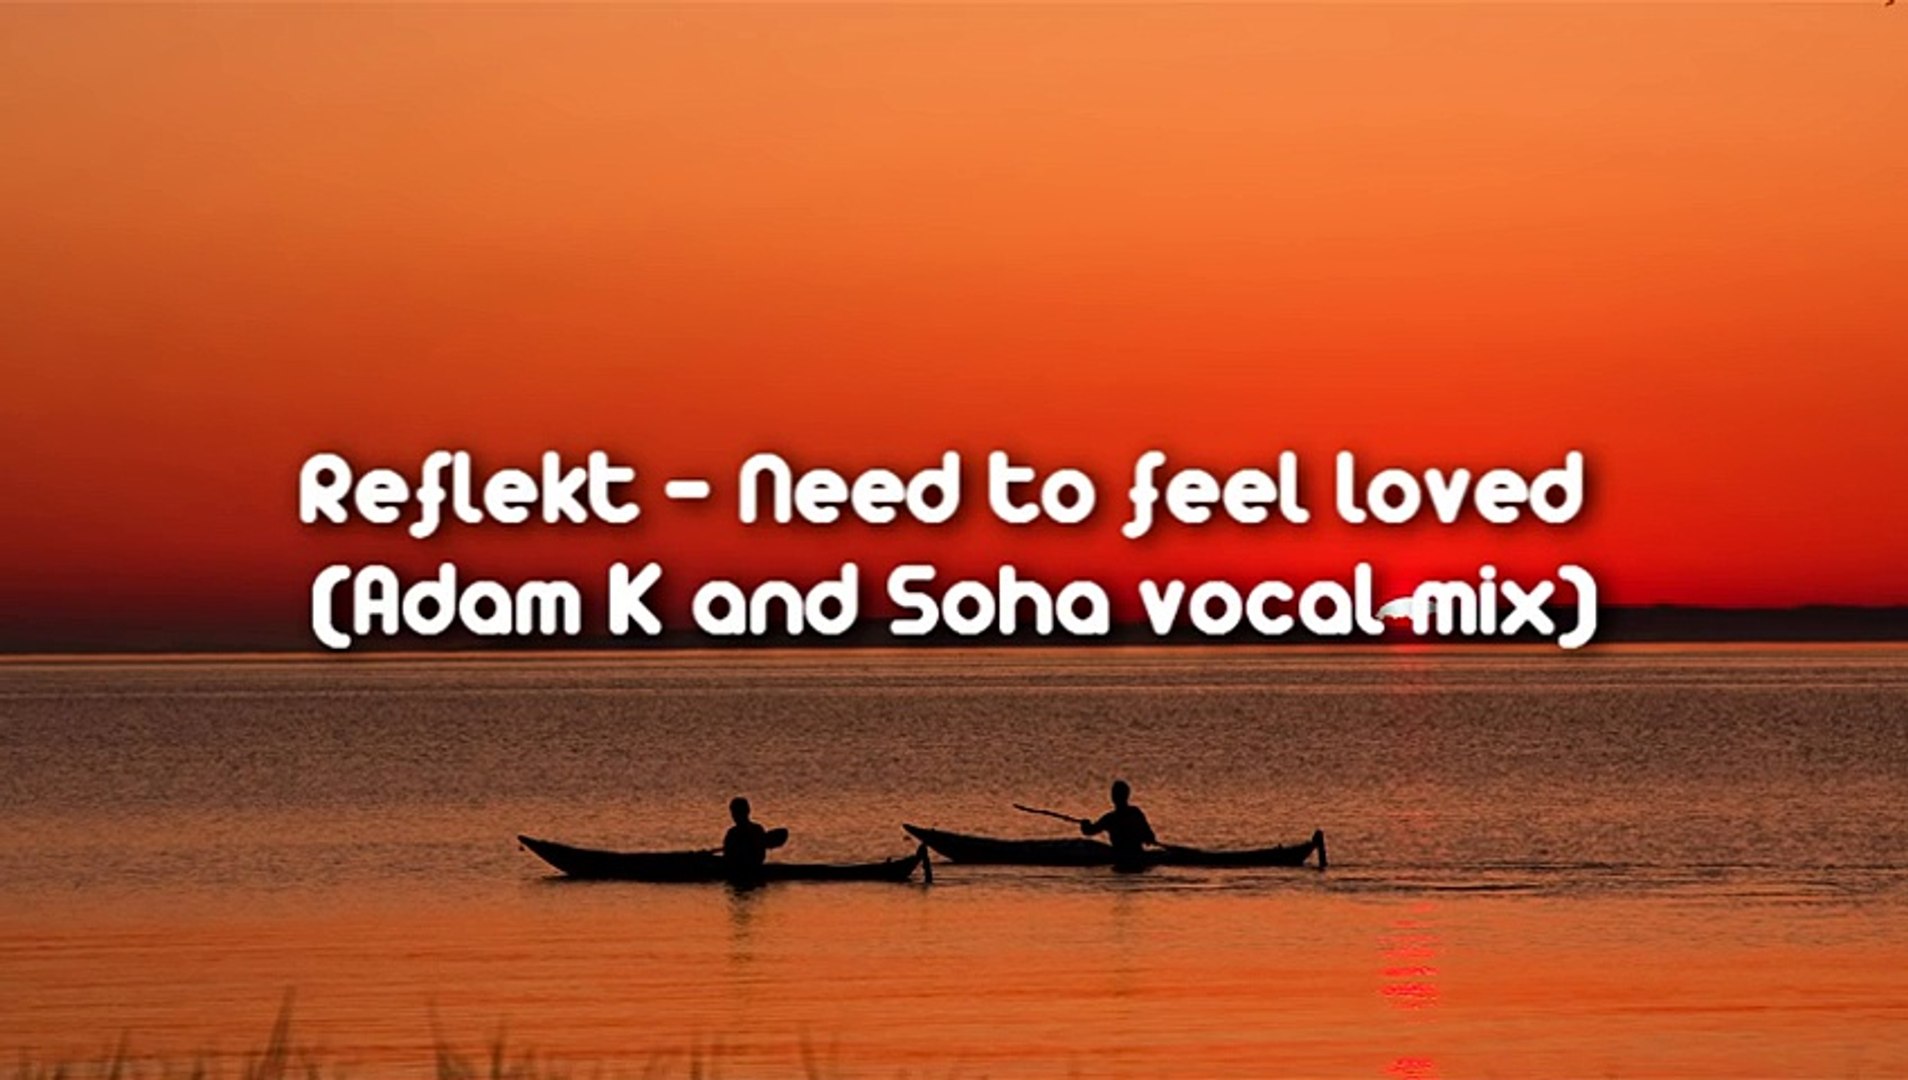 Reflekt need to feel loved. Adam k Soha need to feel. Need to feel Loved Adam k Soha Vocal Mix. Reflekt feat Delline Bass - need to feel Loved (Adam k & Soho Vocal Mix).